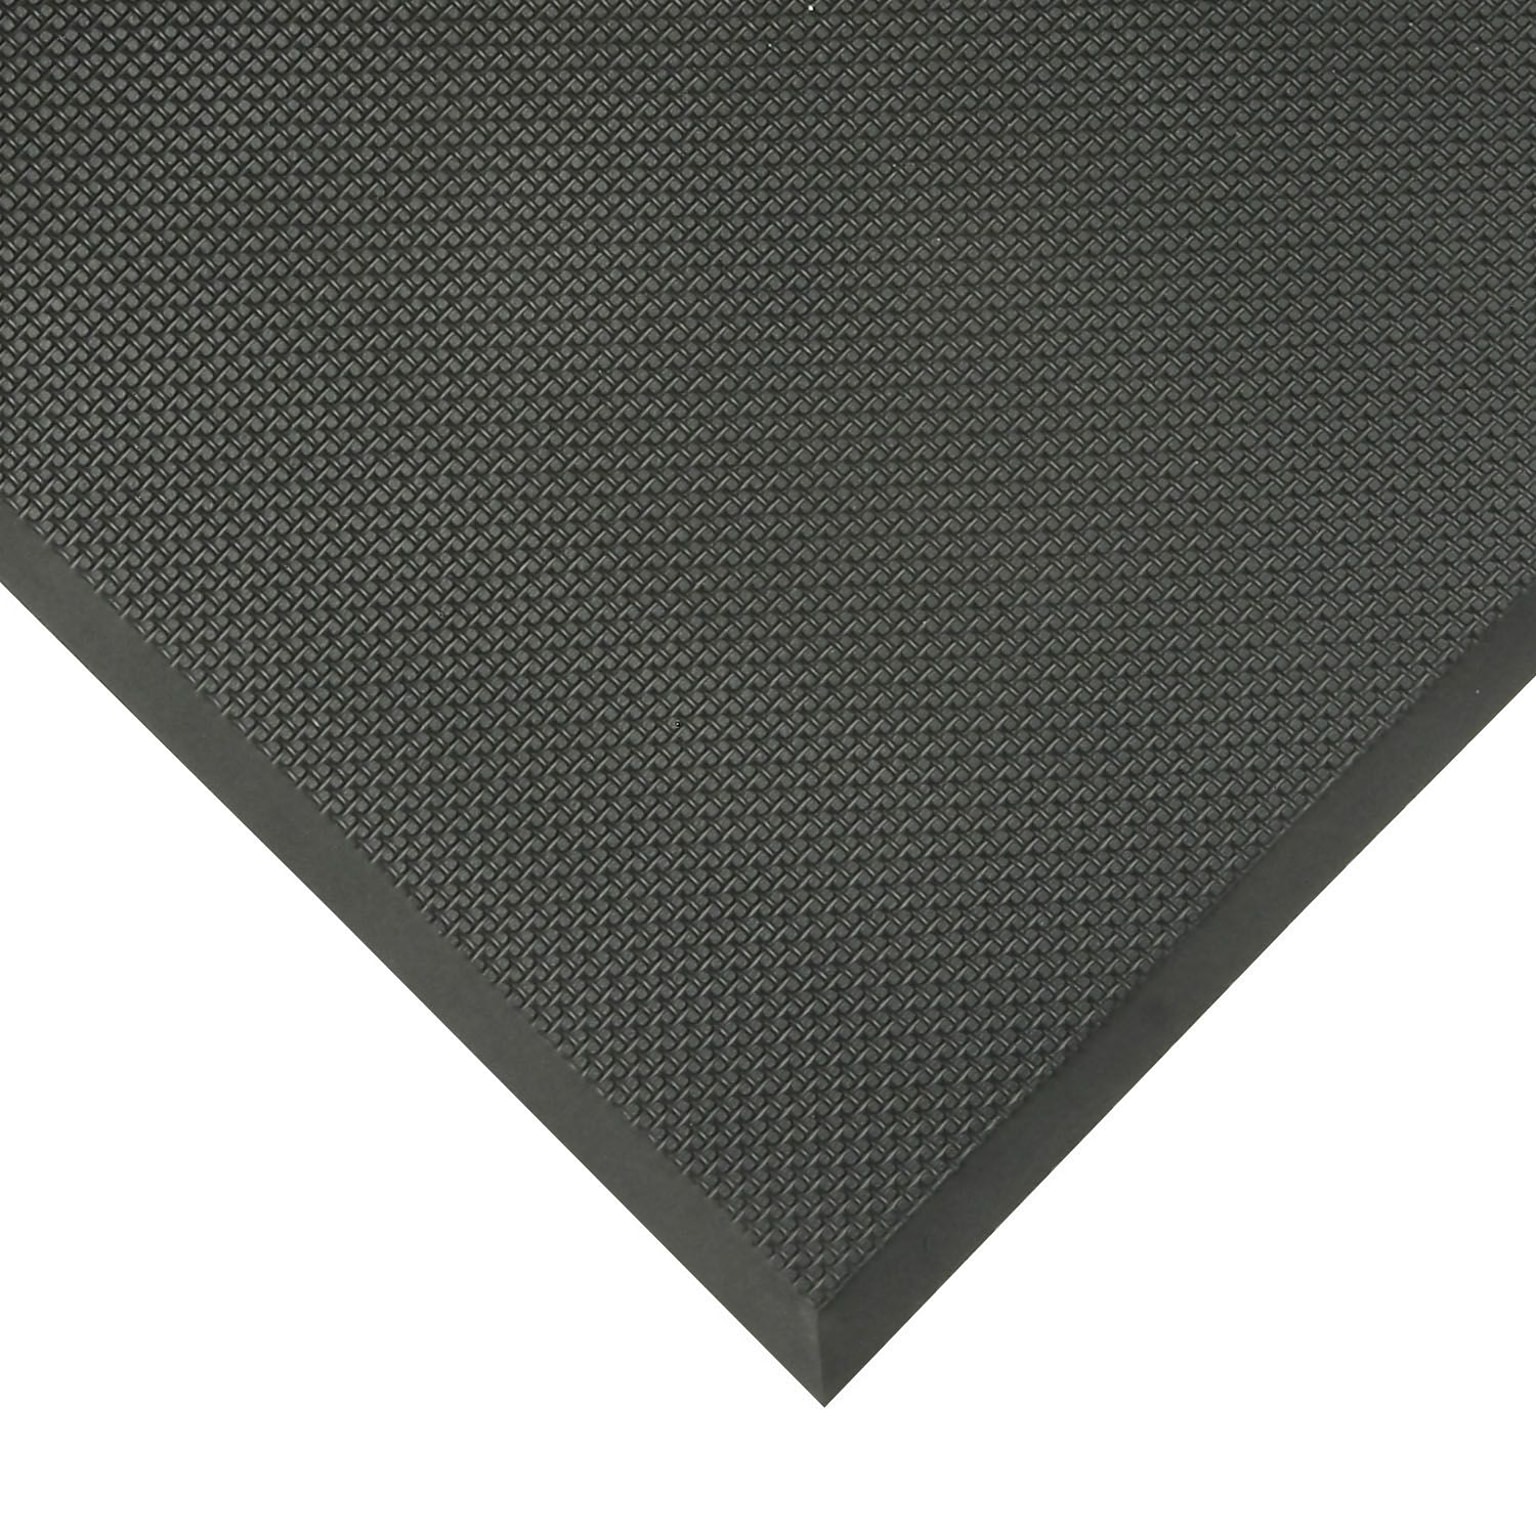 Apex Superfoam PVC Nitrile Foam Anti-Fatigue Mat, 36 x 24, Black